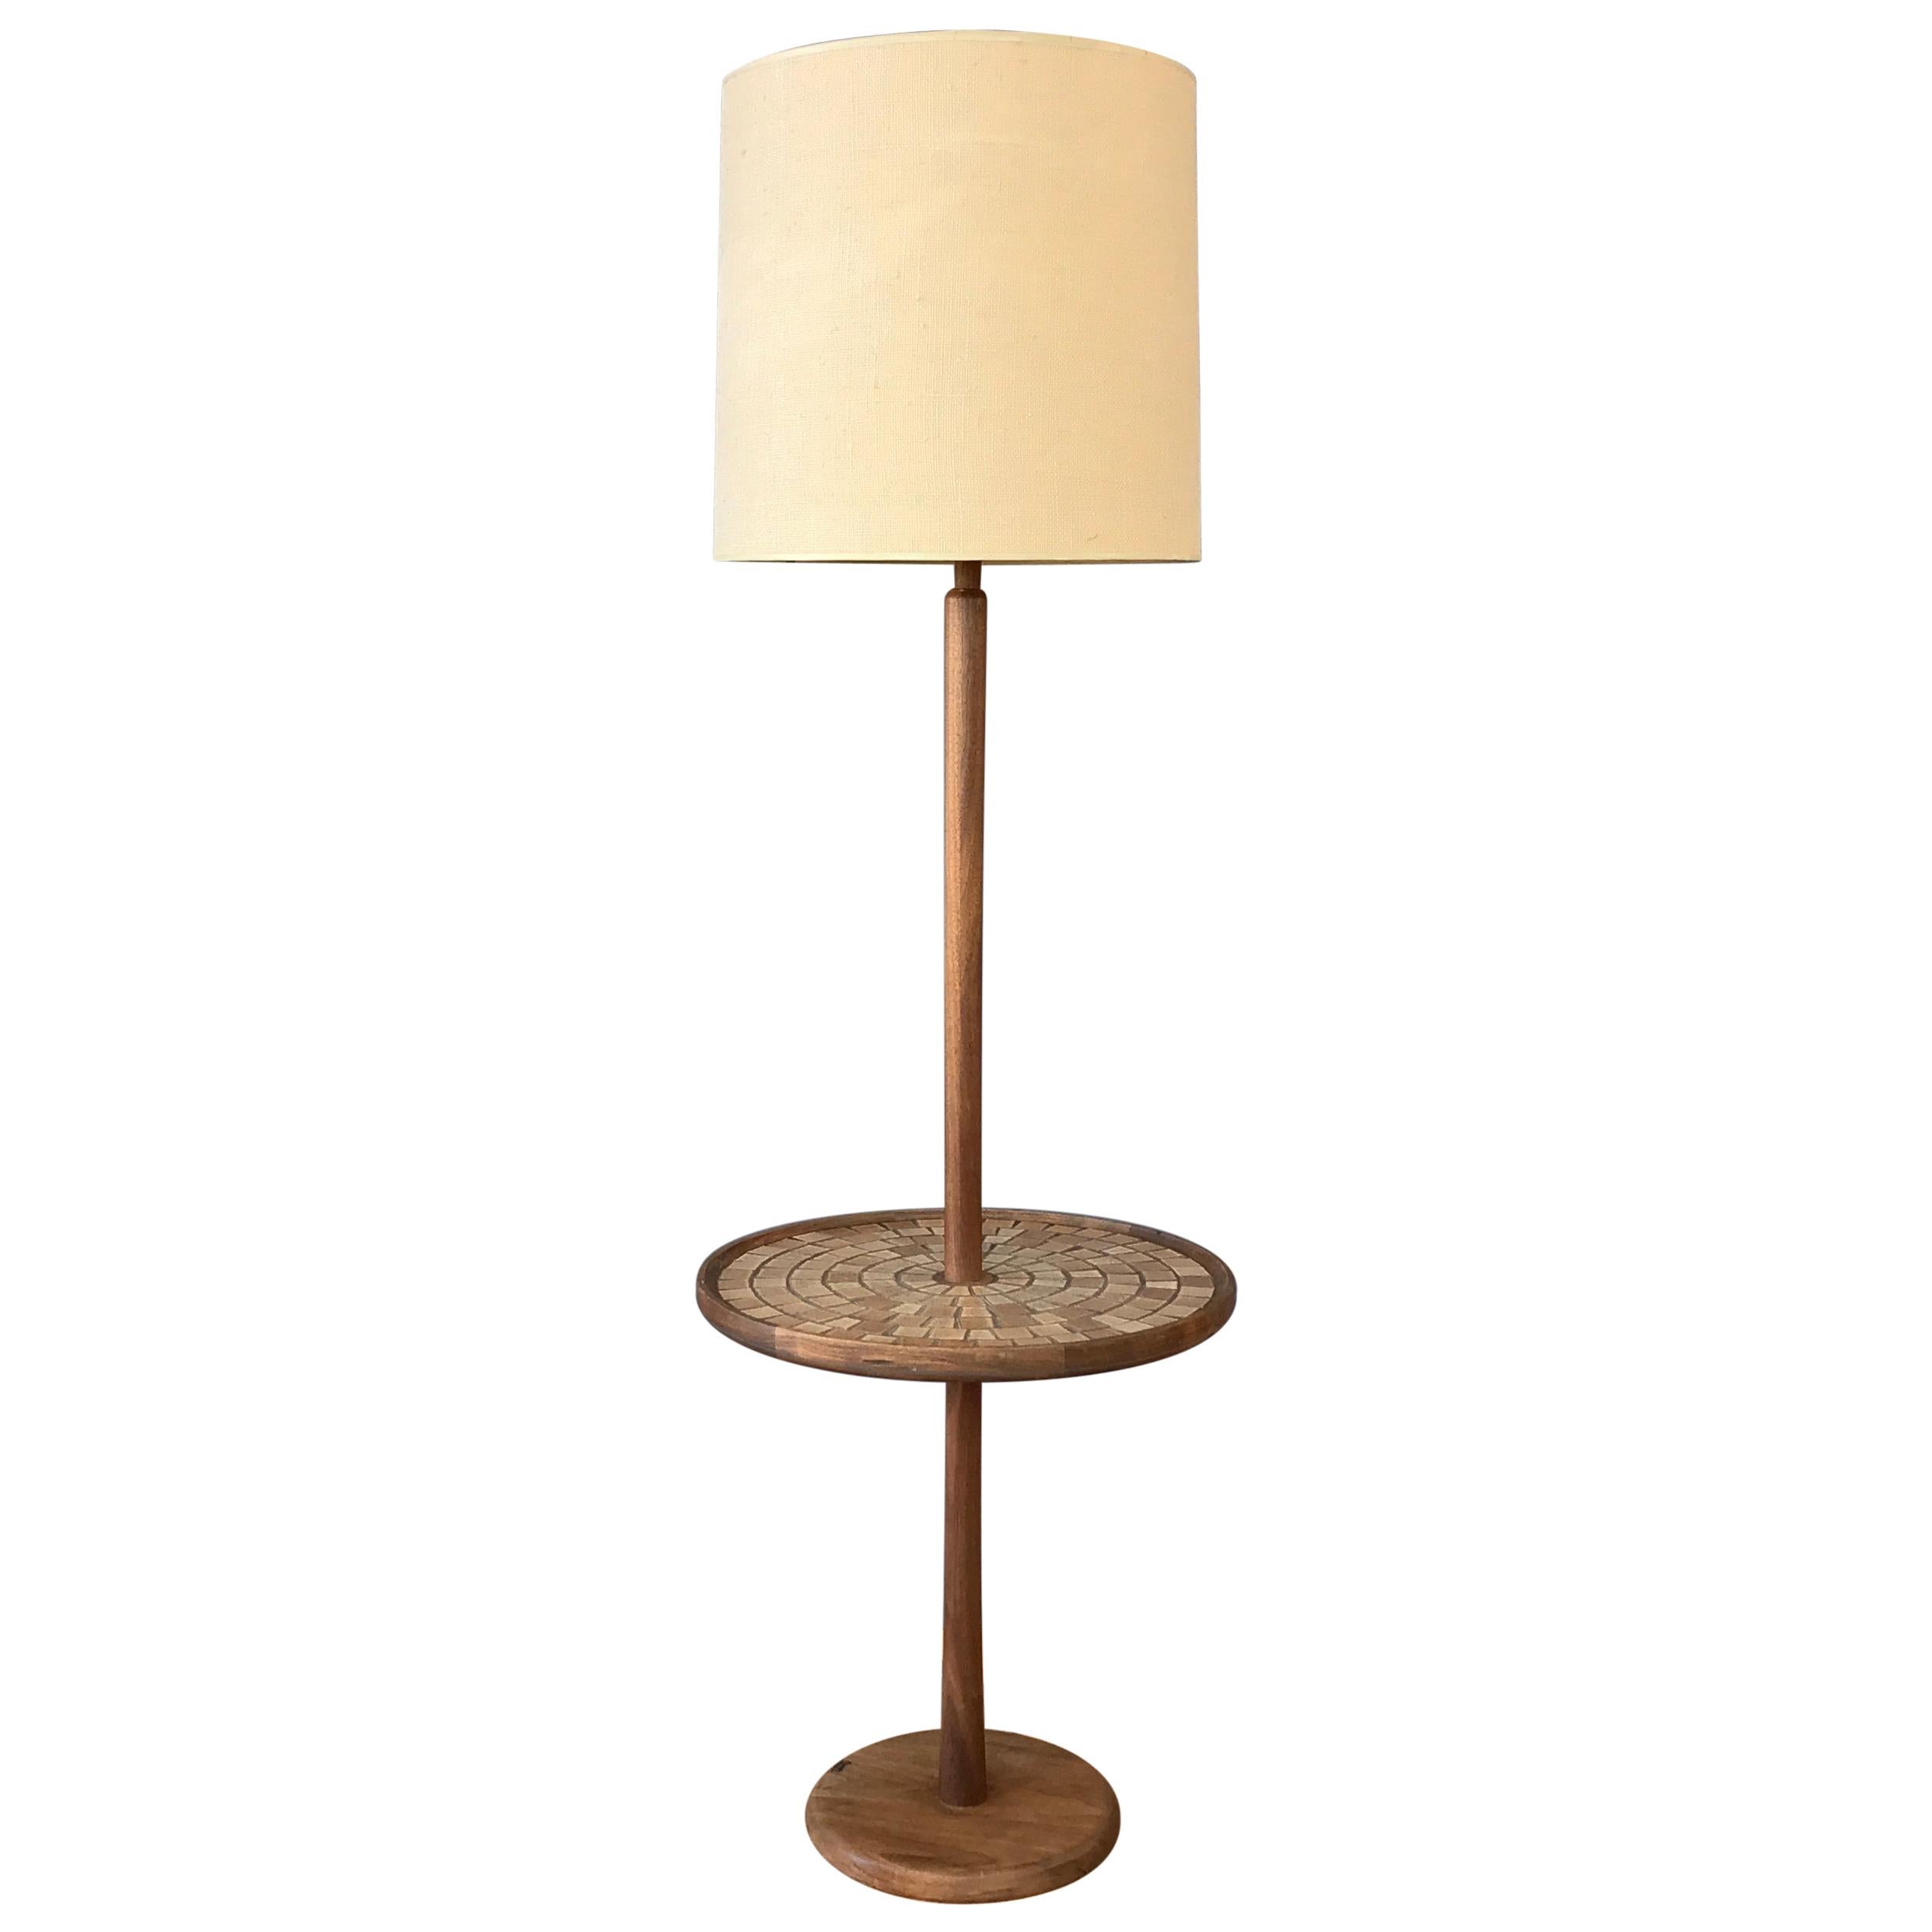 Gordon & Jane Martz for Marshall Studios Floor Lamp with Tile Table B